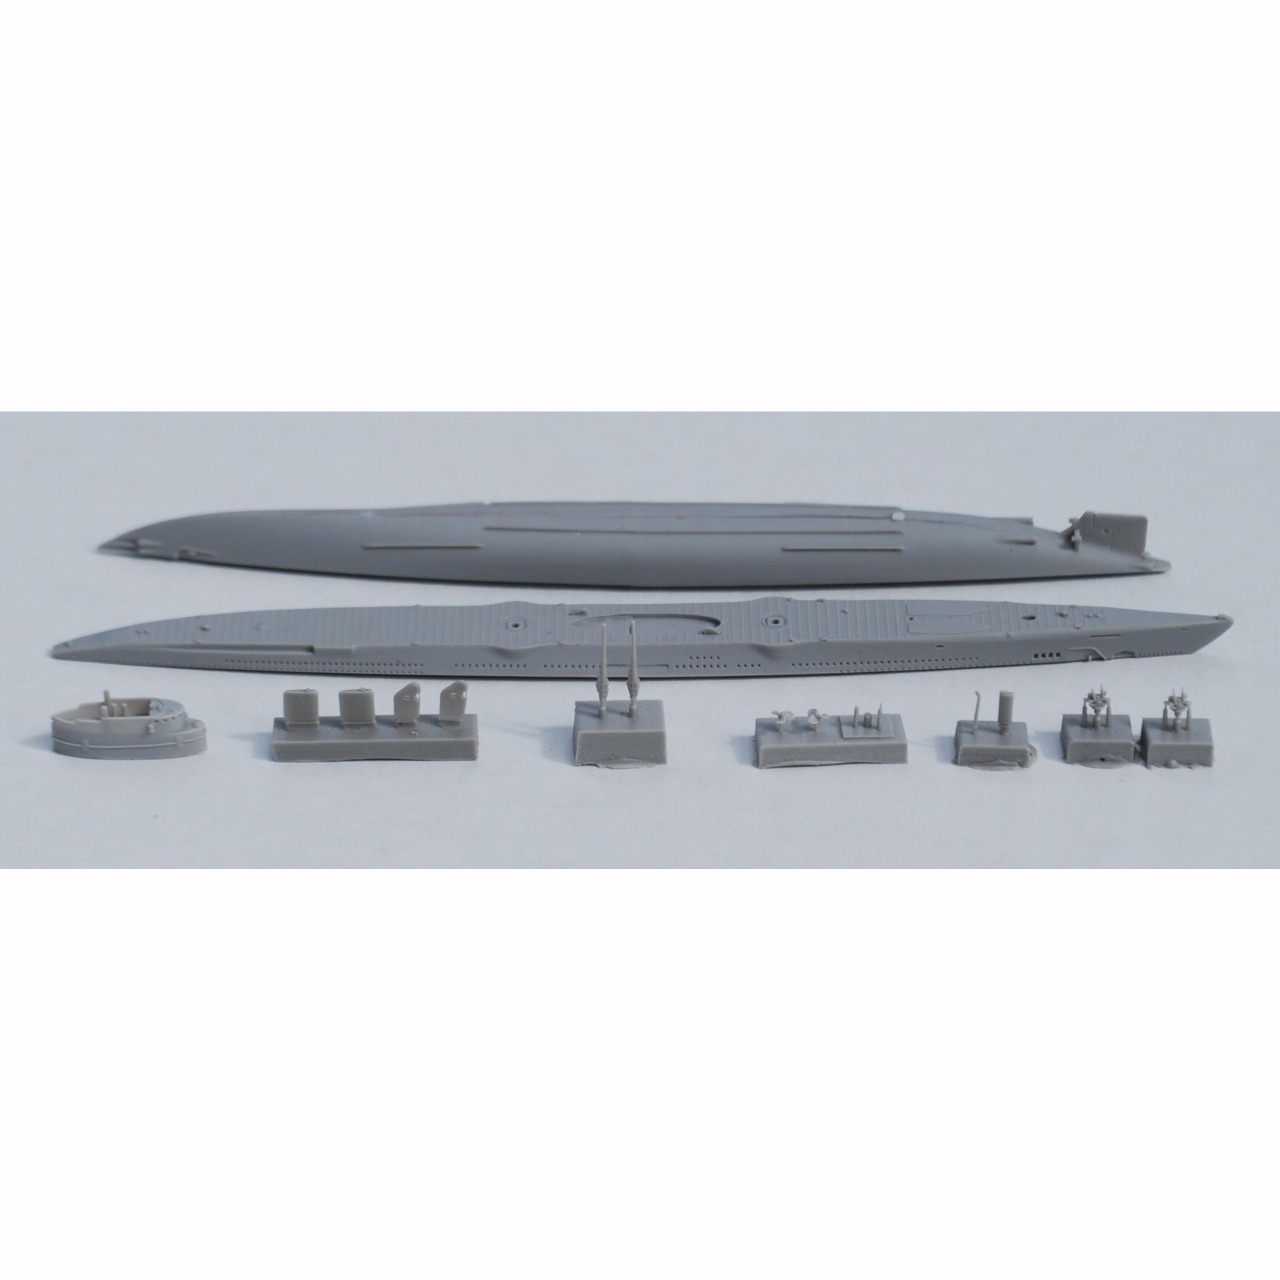 【新製品】700-08 米海軍 SM-1 アルゴノート Argonaut 機雷敷設潜水艦